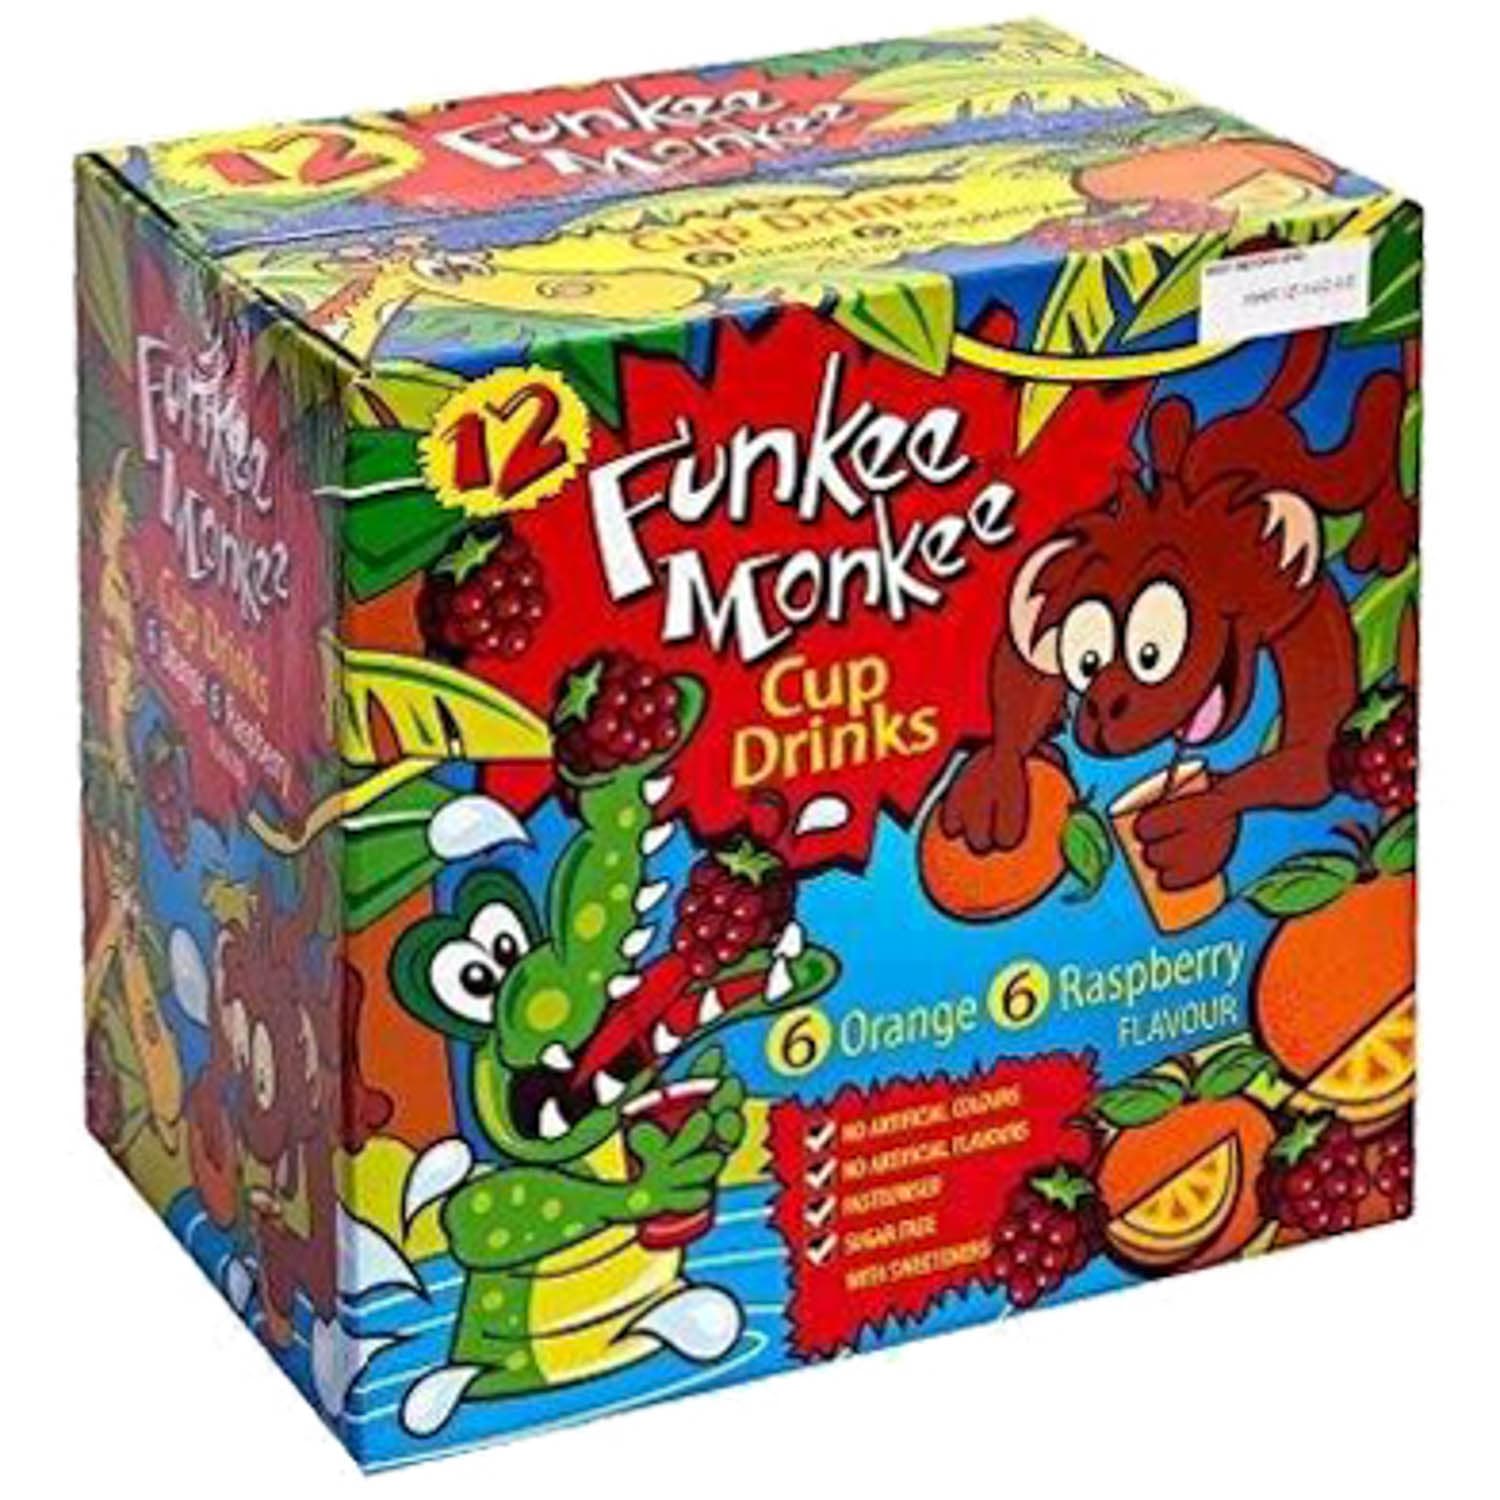 Funkee Monkee 12pk Cup Drinks